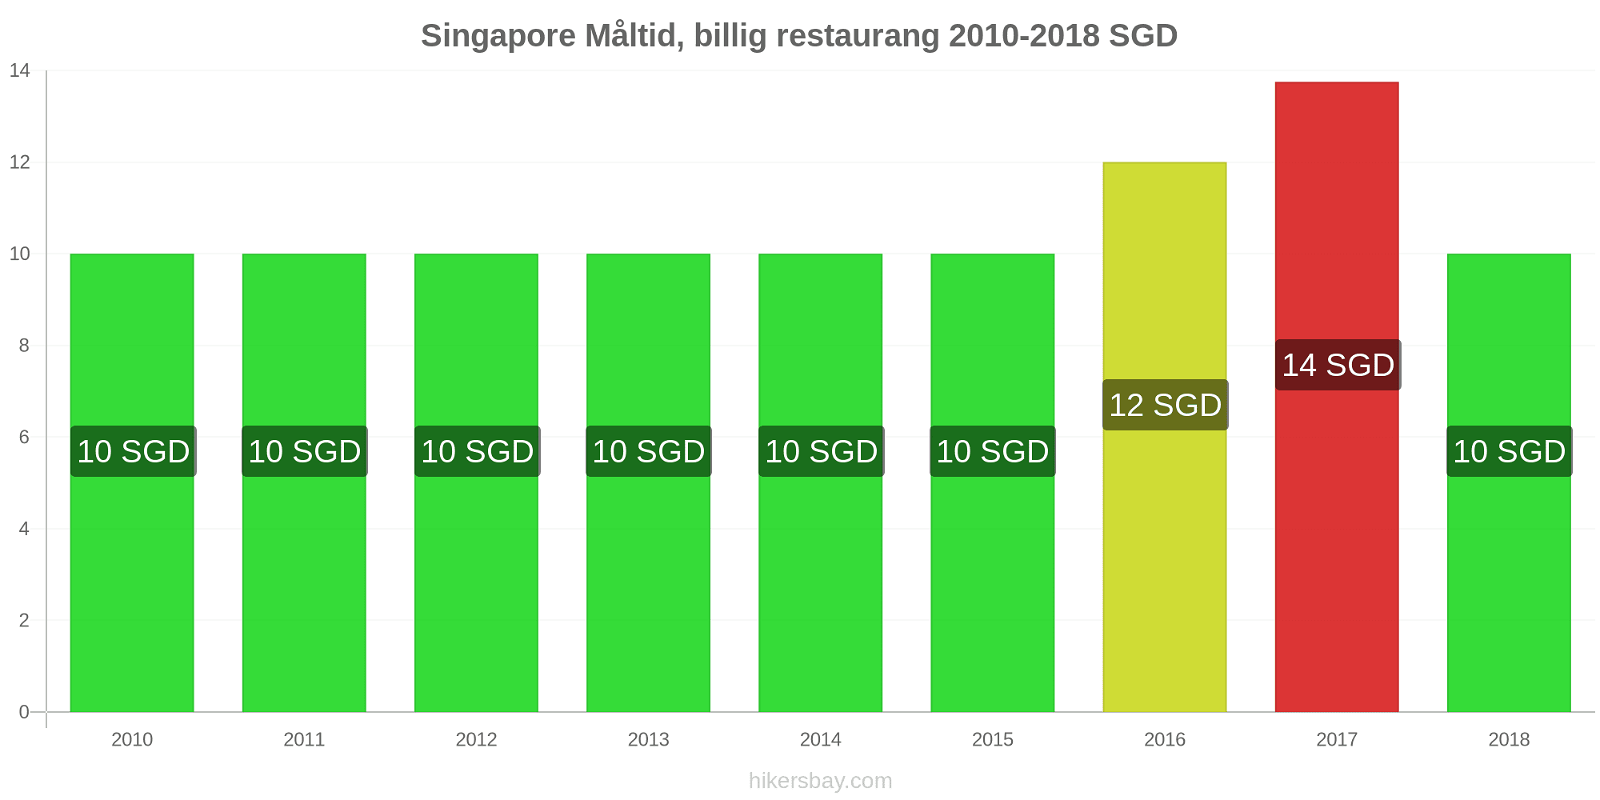 Singapore prisändringar Måltid i en billig restaurang hikersbay.com